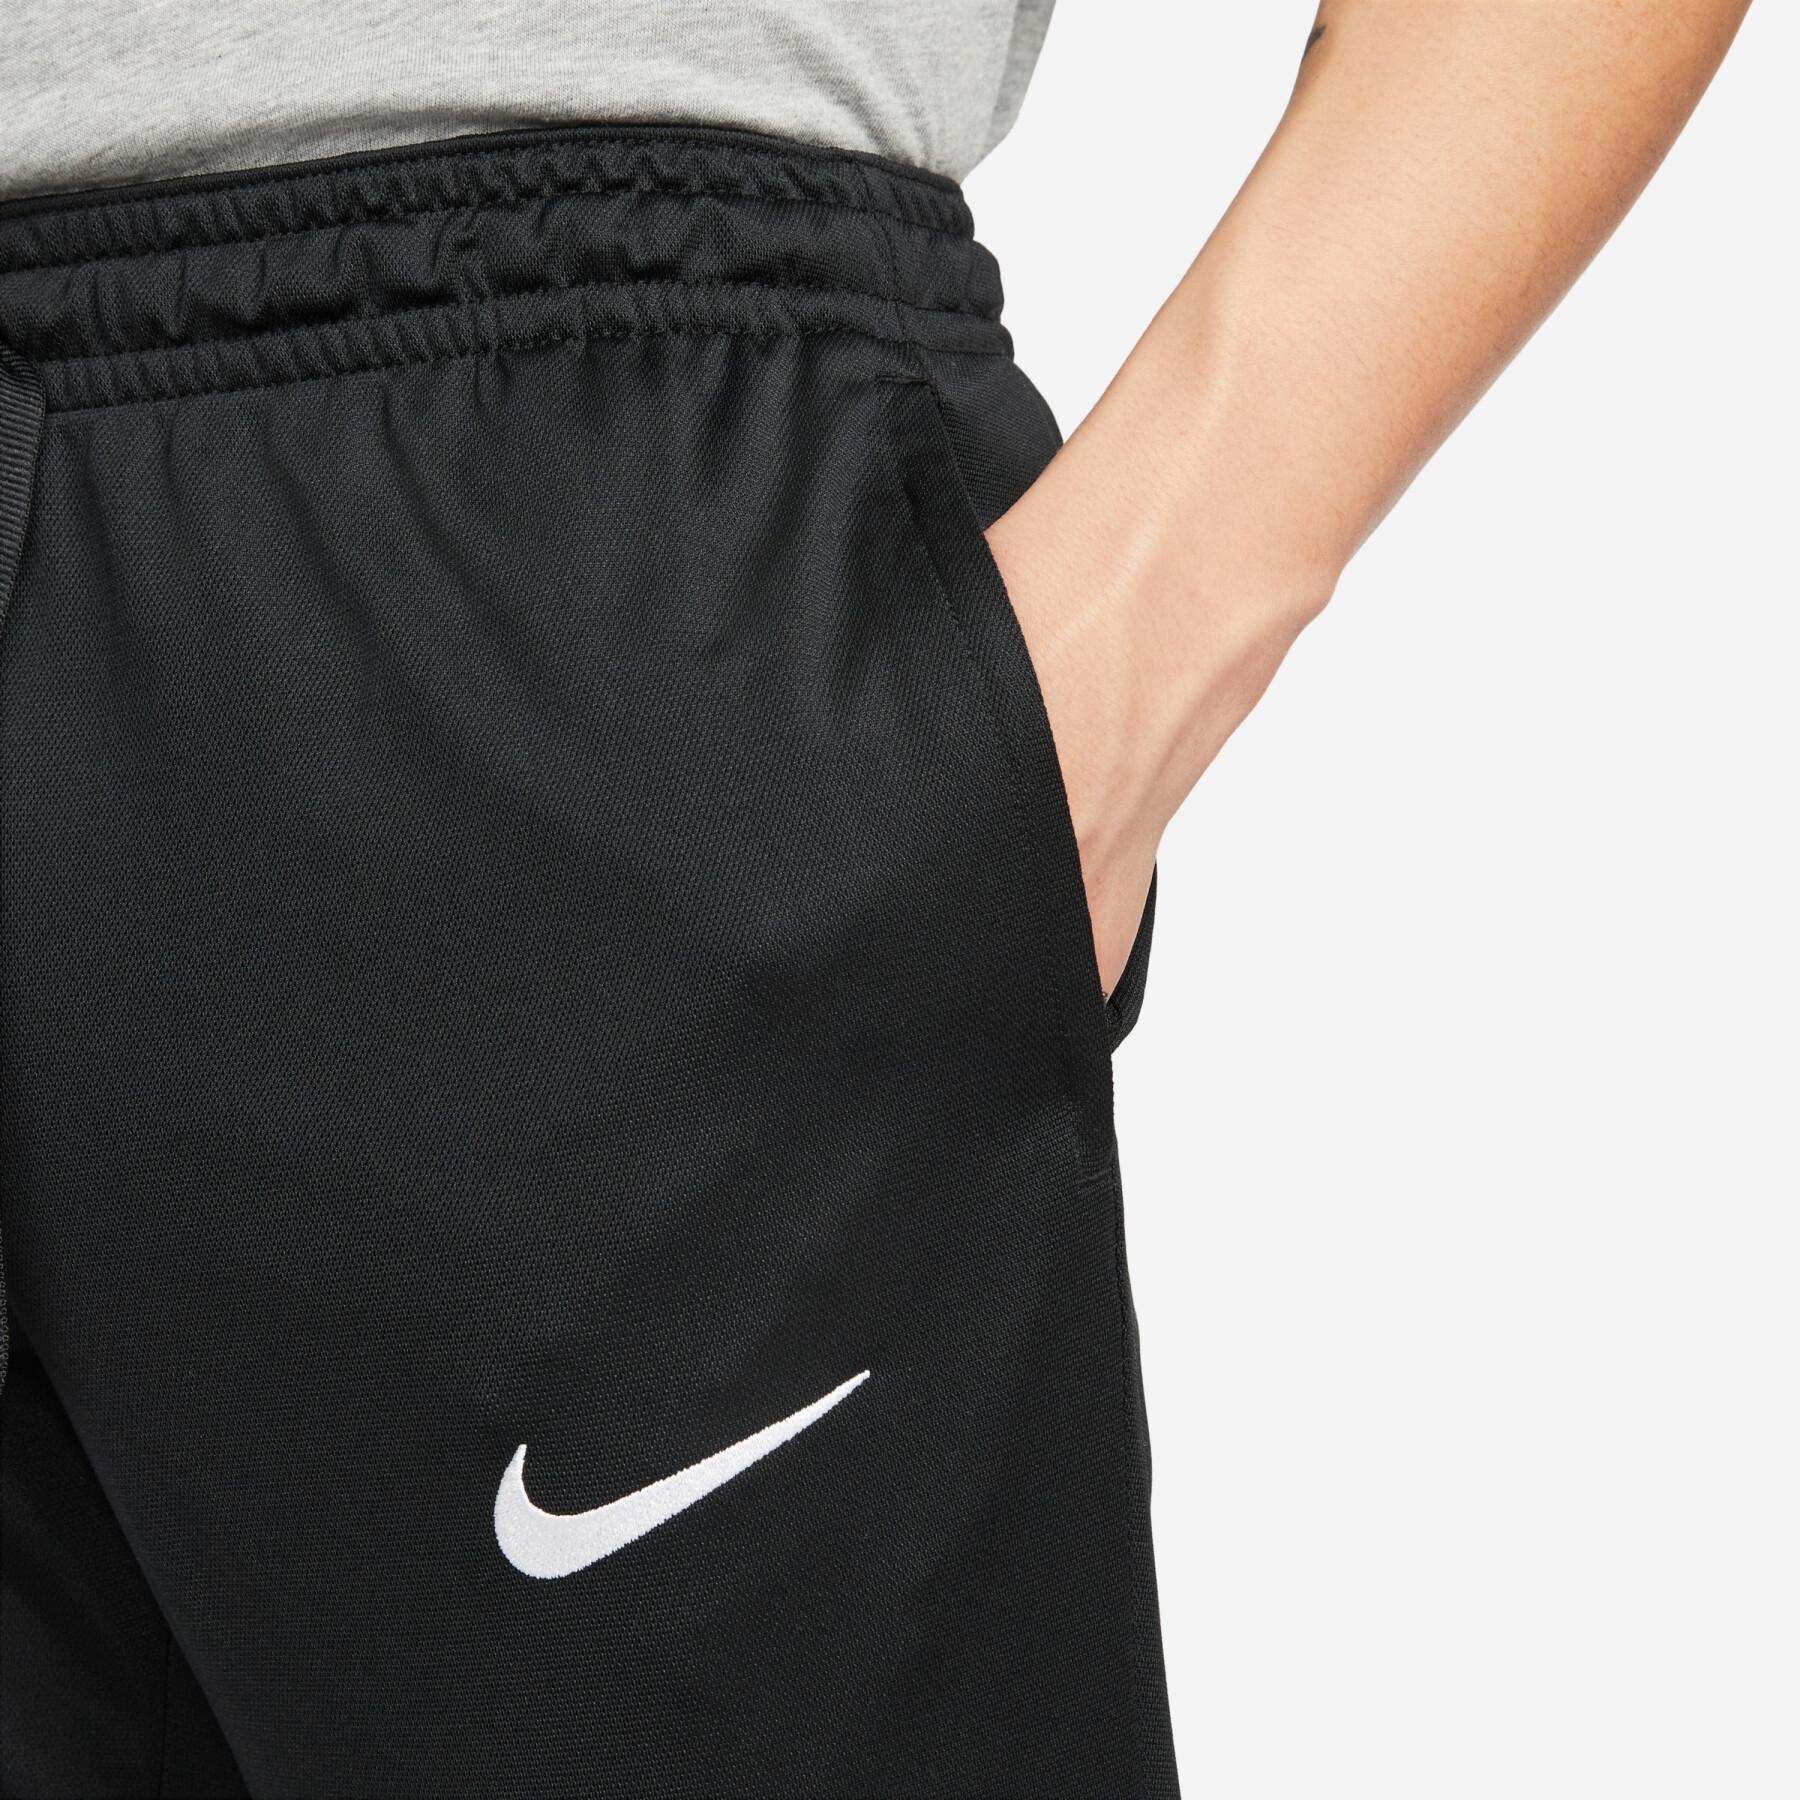 Pantalon Nike F.C. Dri-Fit